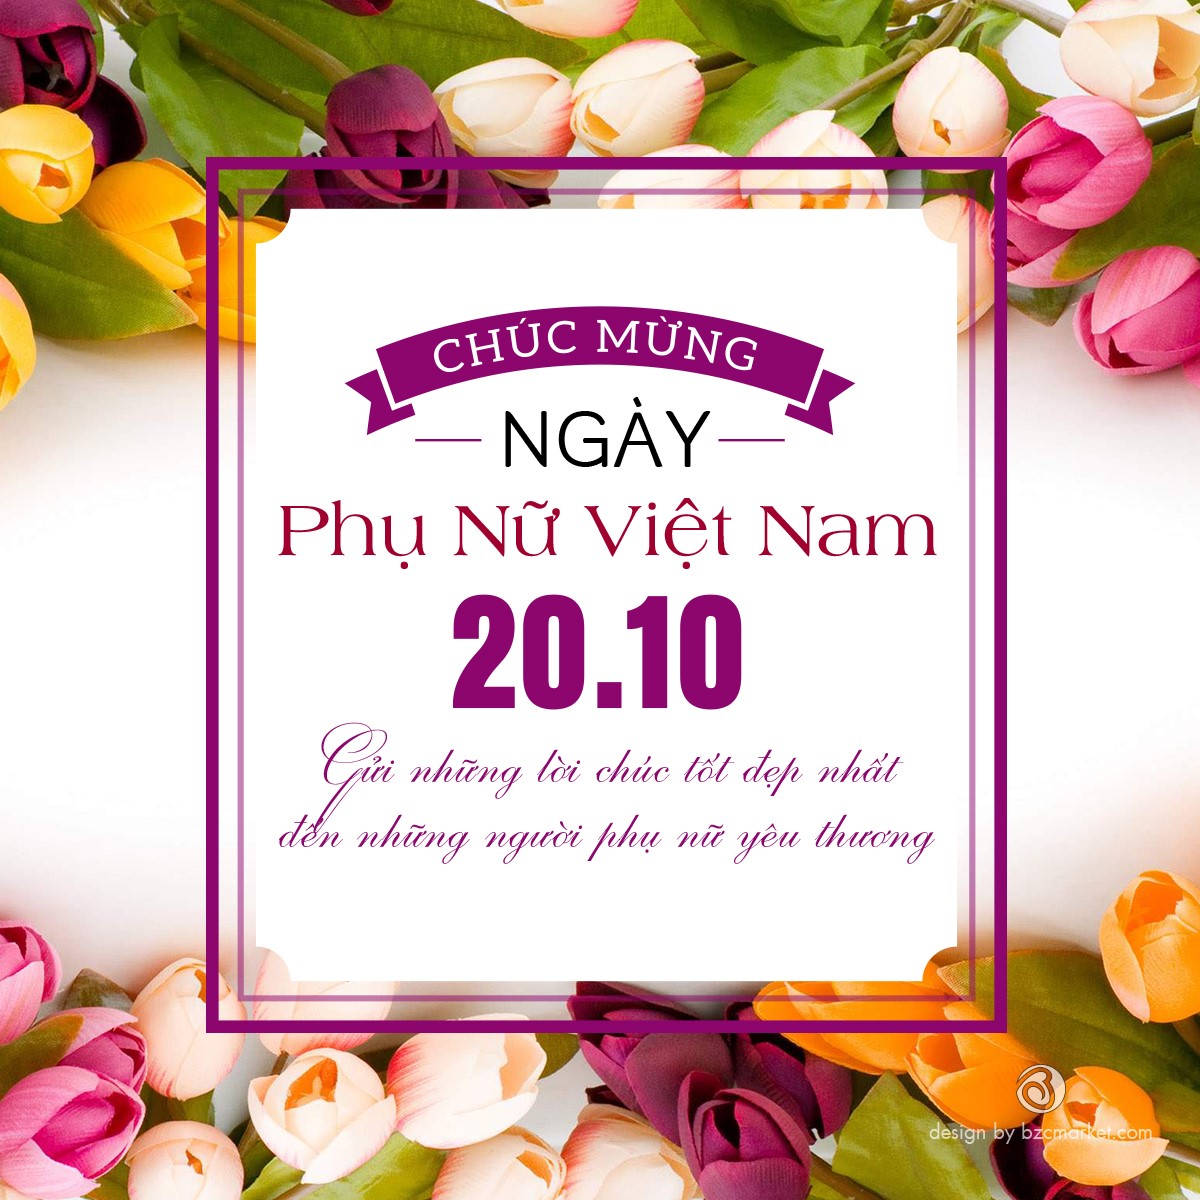 Hình Chúc Mừng Ngày 20-10: Một ngày đặc biệt dành riêng cho các cô gái và phụ nữ Việt Nam. Chính thức được đánh dấu vào ngày 20/10 hàng năm, hãy dành những lời chúc tốt đẹp nhất cùng với những bức ảnh thật đẹp để gửi đến những người phụ nữ quan trọng trong cuộc đời của mình.